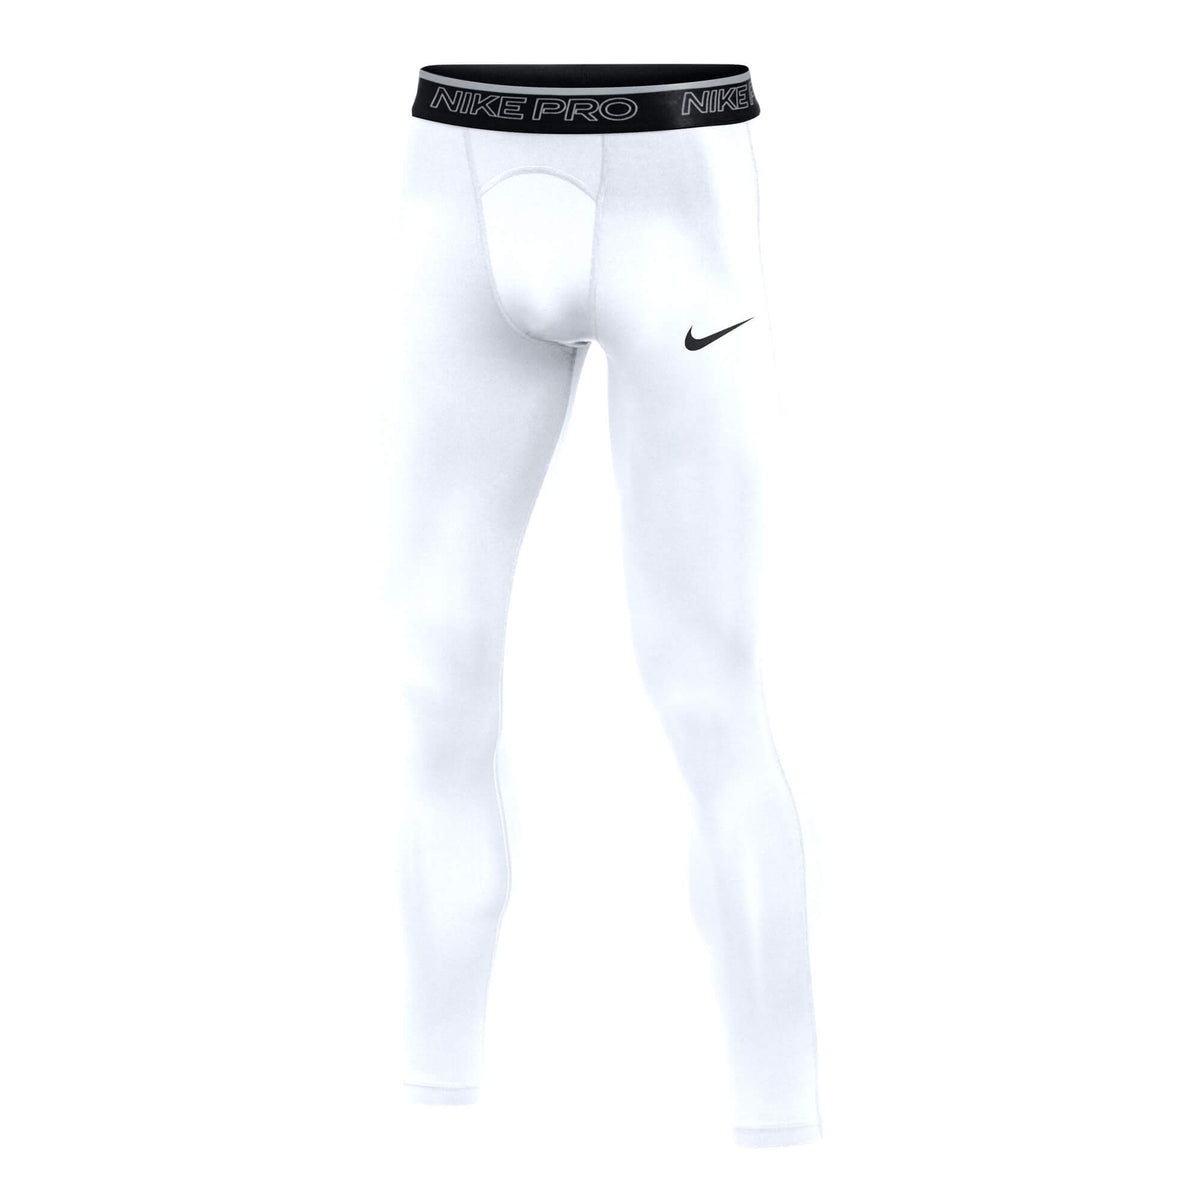 Nike Men's Pro Training Tights White/Black